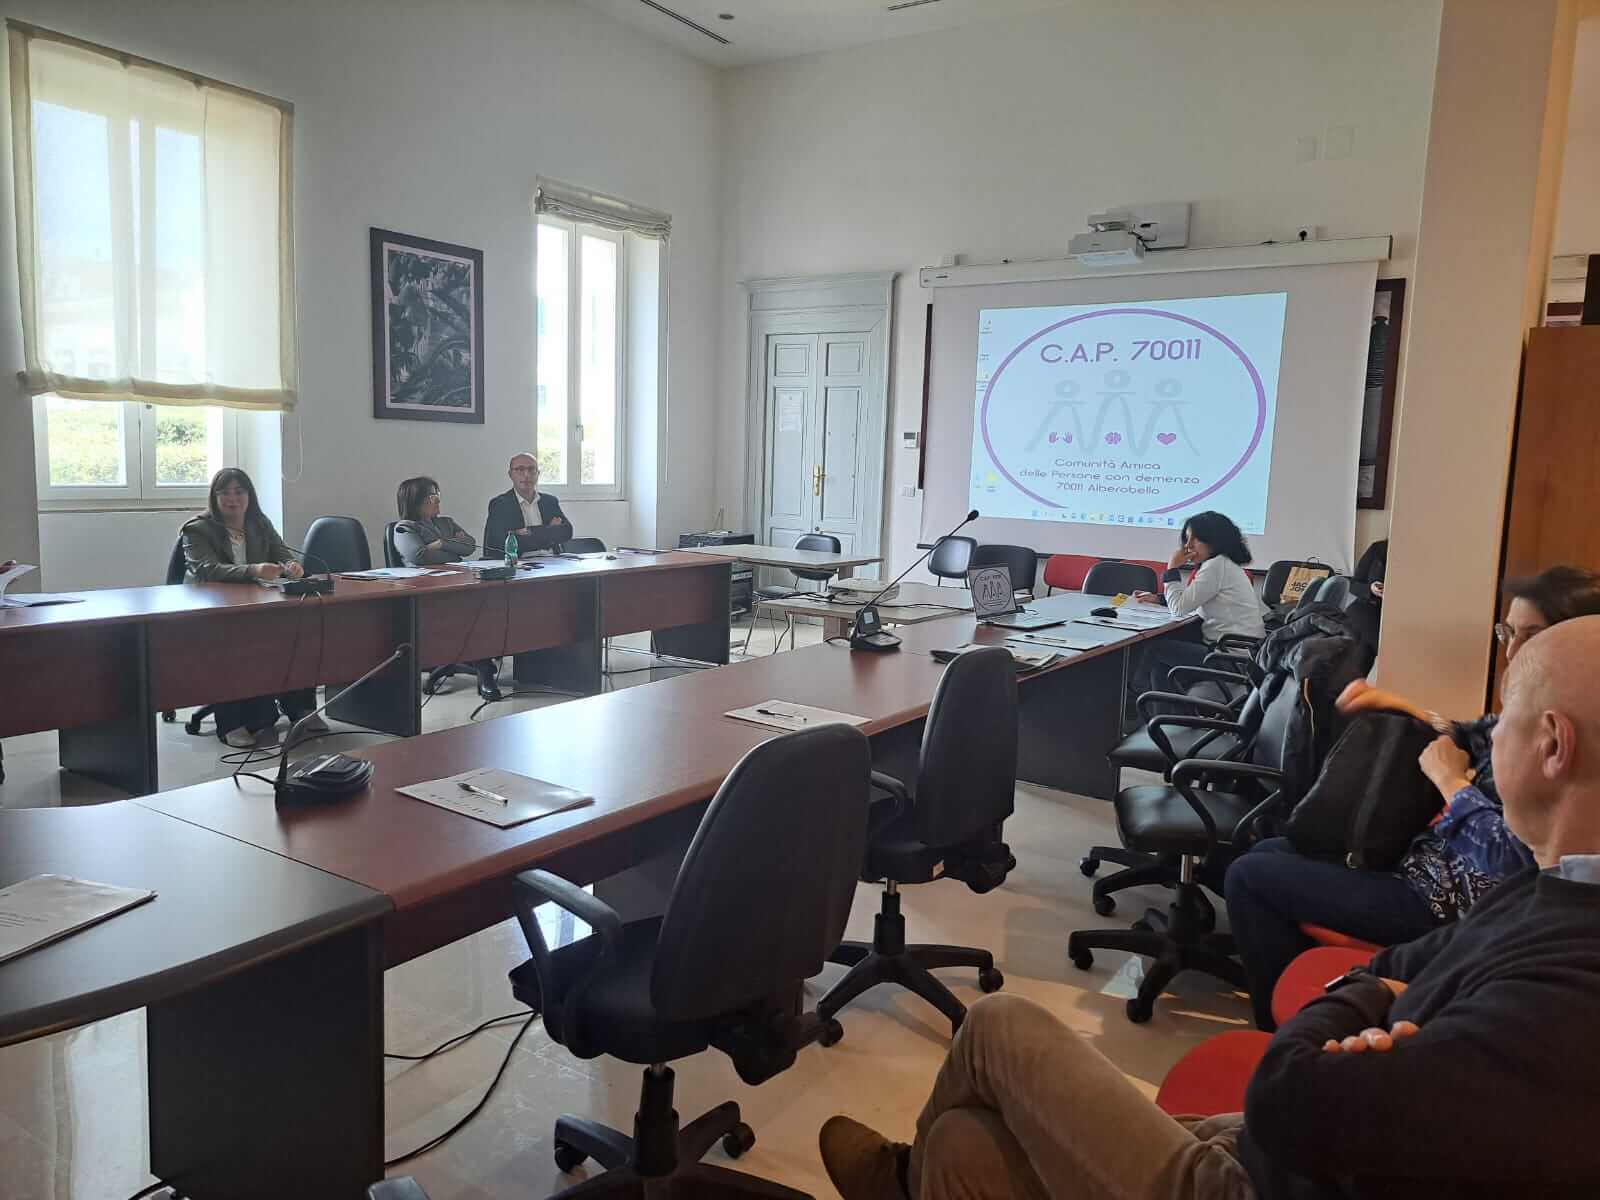 Nella sala consigliare del comune di Alberobello viene effettuato il primo incontro dell'Atelier Formativo relativo al Progetto CAP 70011. Vengono mostrate delle slide necessarie per supportare l'attivià di formazione.